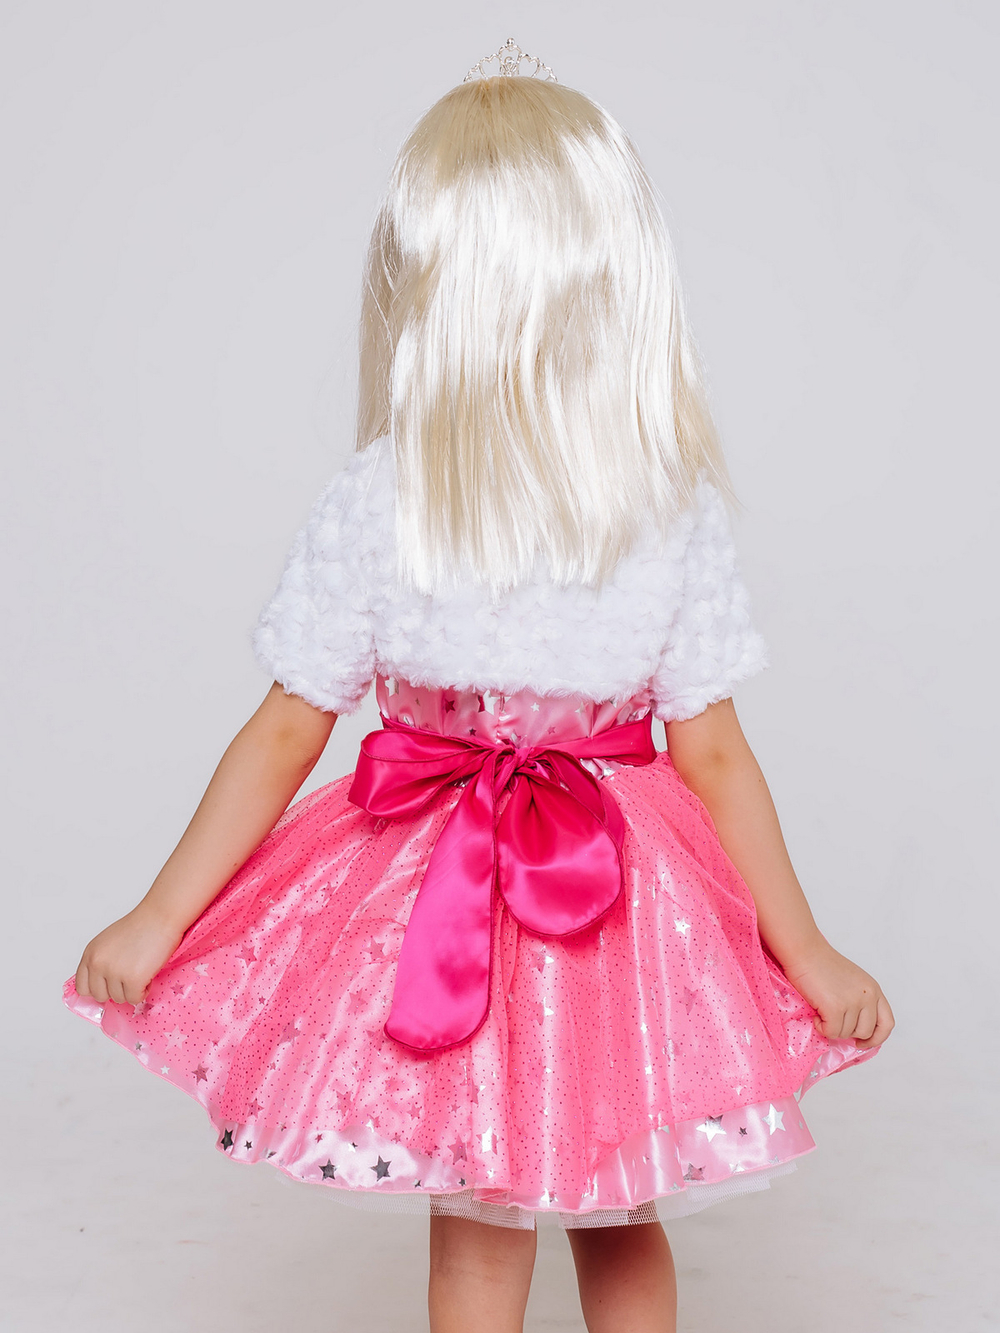 Карнавальный костюм "Барби" (платье, парик, диадема, болеро) ПУГОВКА 2094 к-20 (асс., 128)